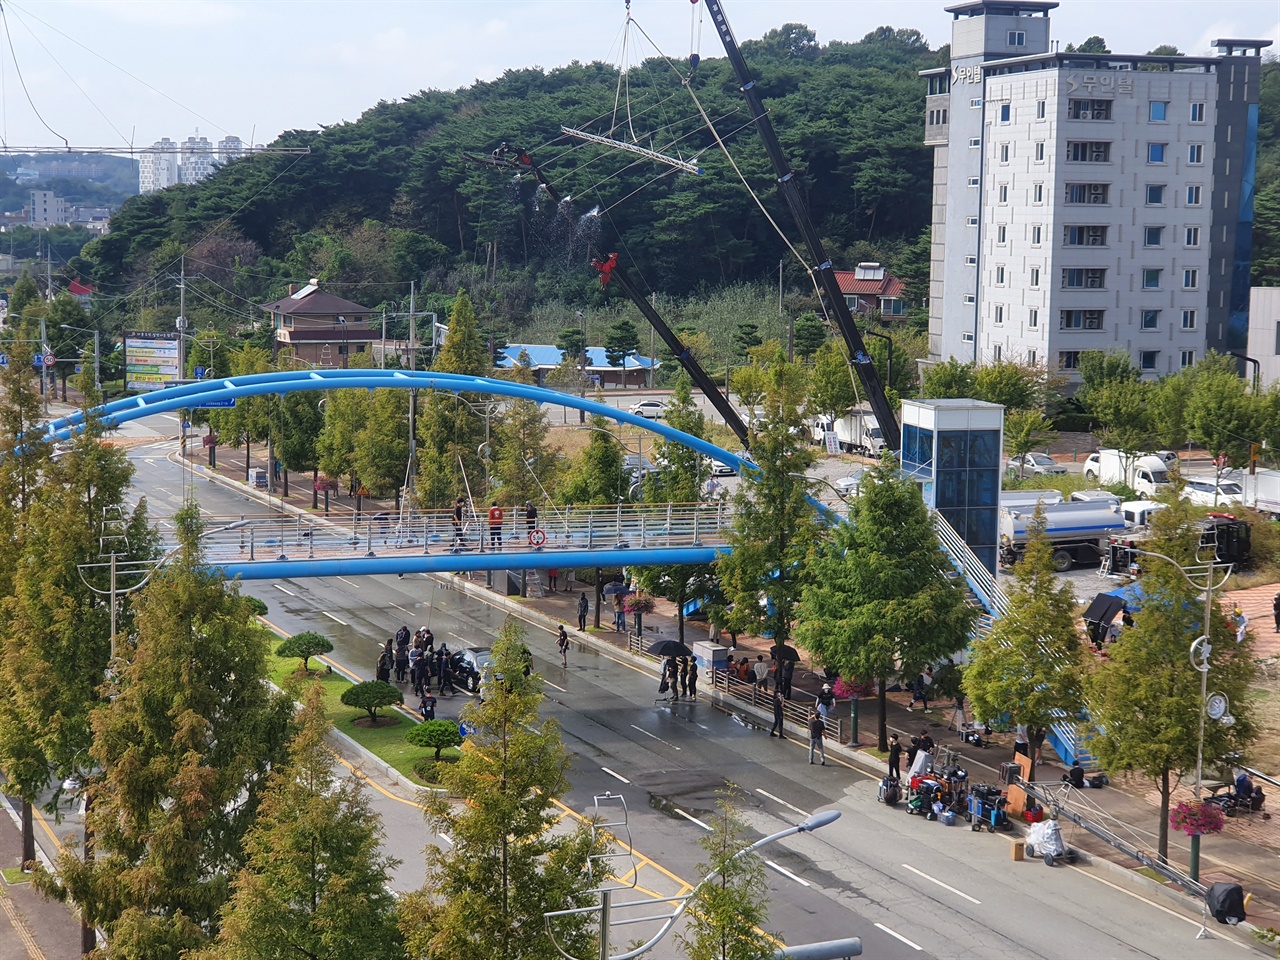 내년에 방영될 드라마 <백설공주에게 죽음을> 촬영이 롯데시네마 앞 육교에서 진행되고 있다.